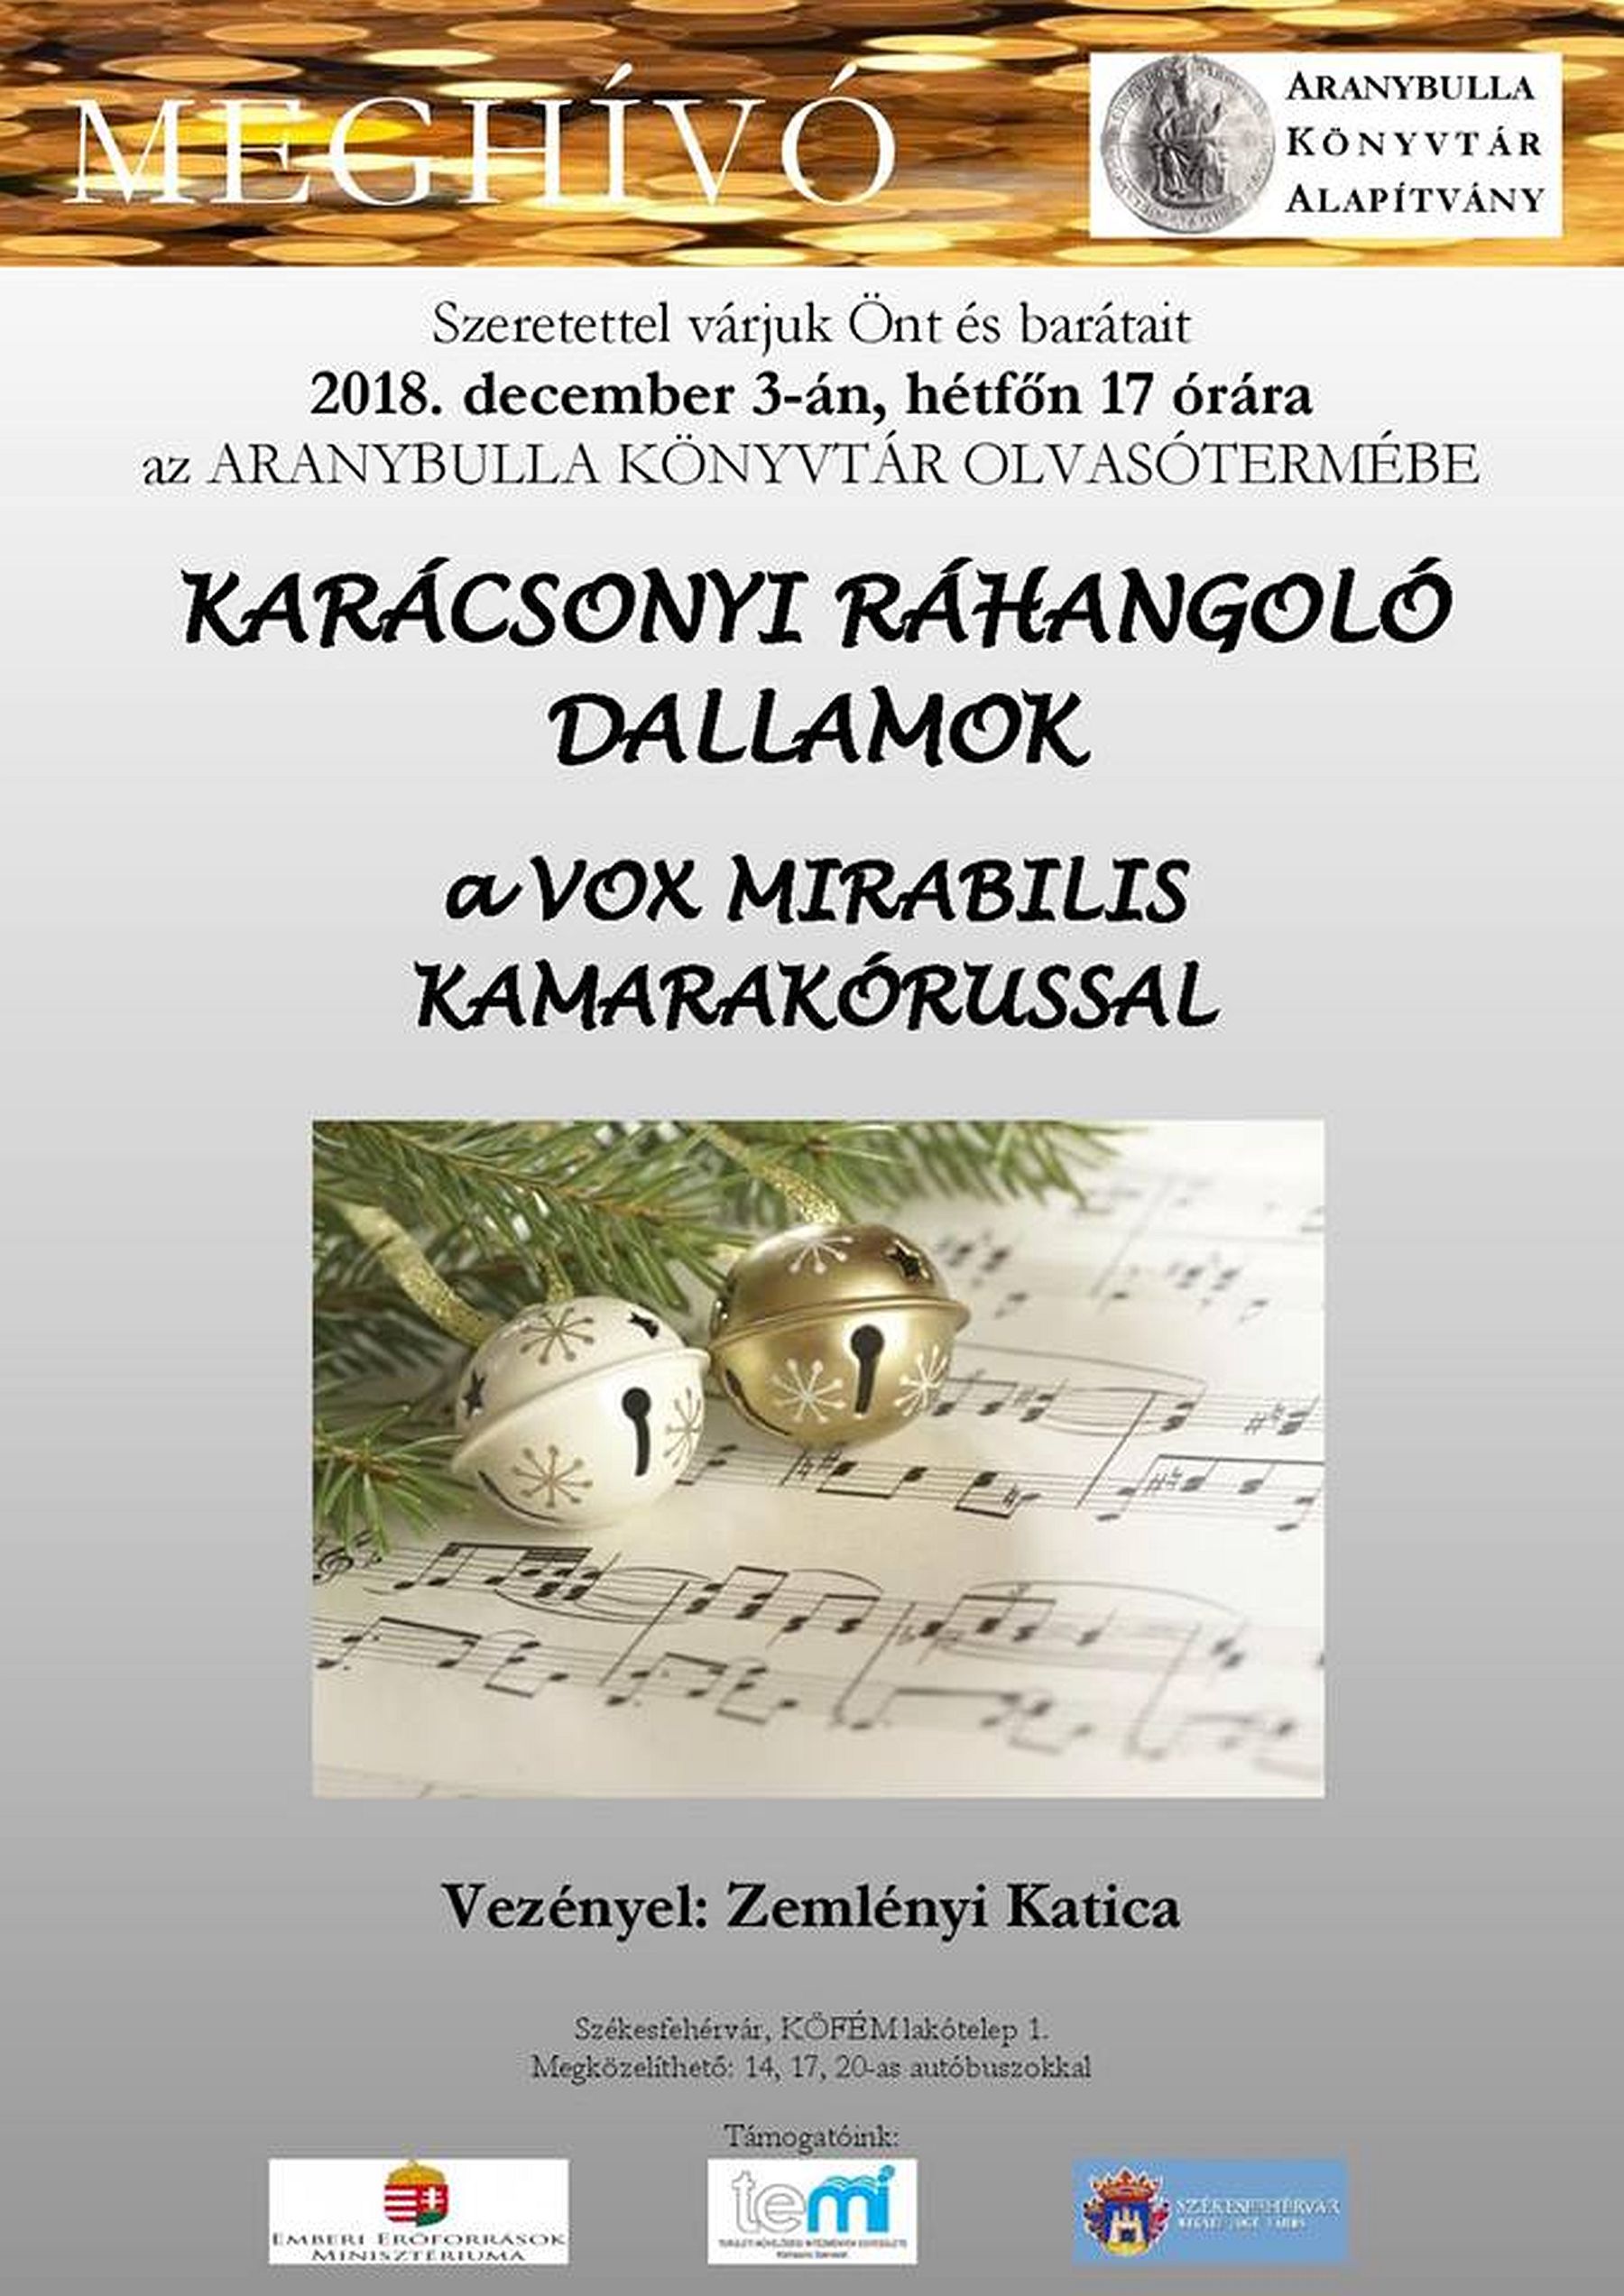 Karácsonyi dallamok az Aranybulla Könyvtárban a Vox Mirabilis kórussal